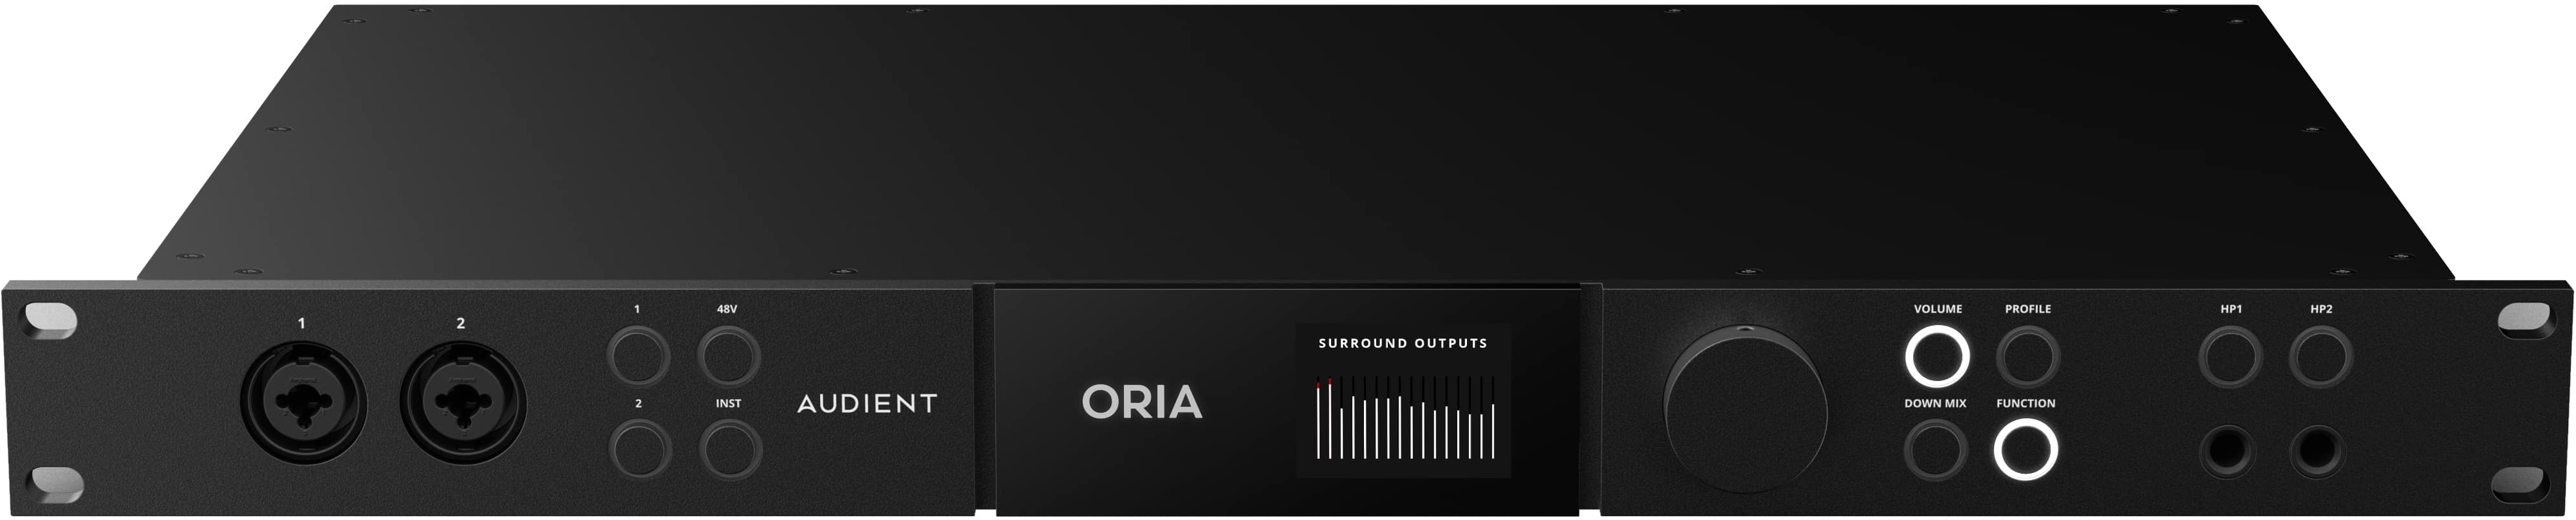 Audient Oria - Interface de audio USB - Main picture